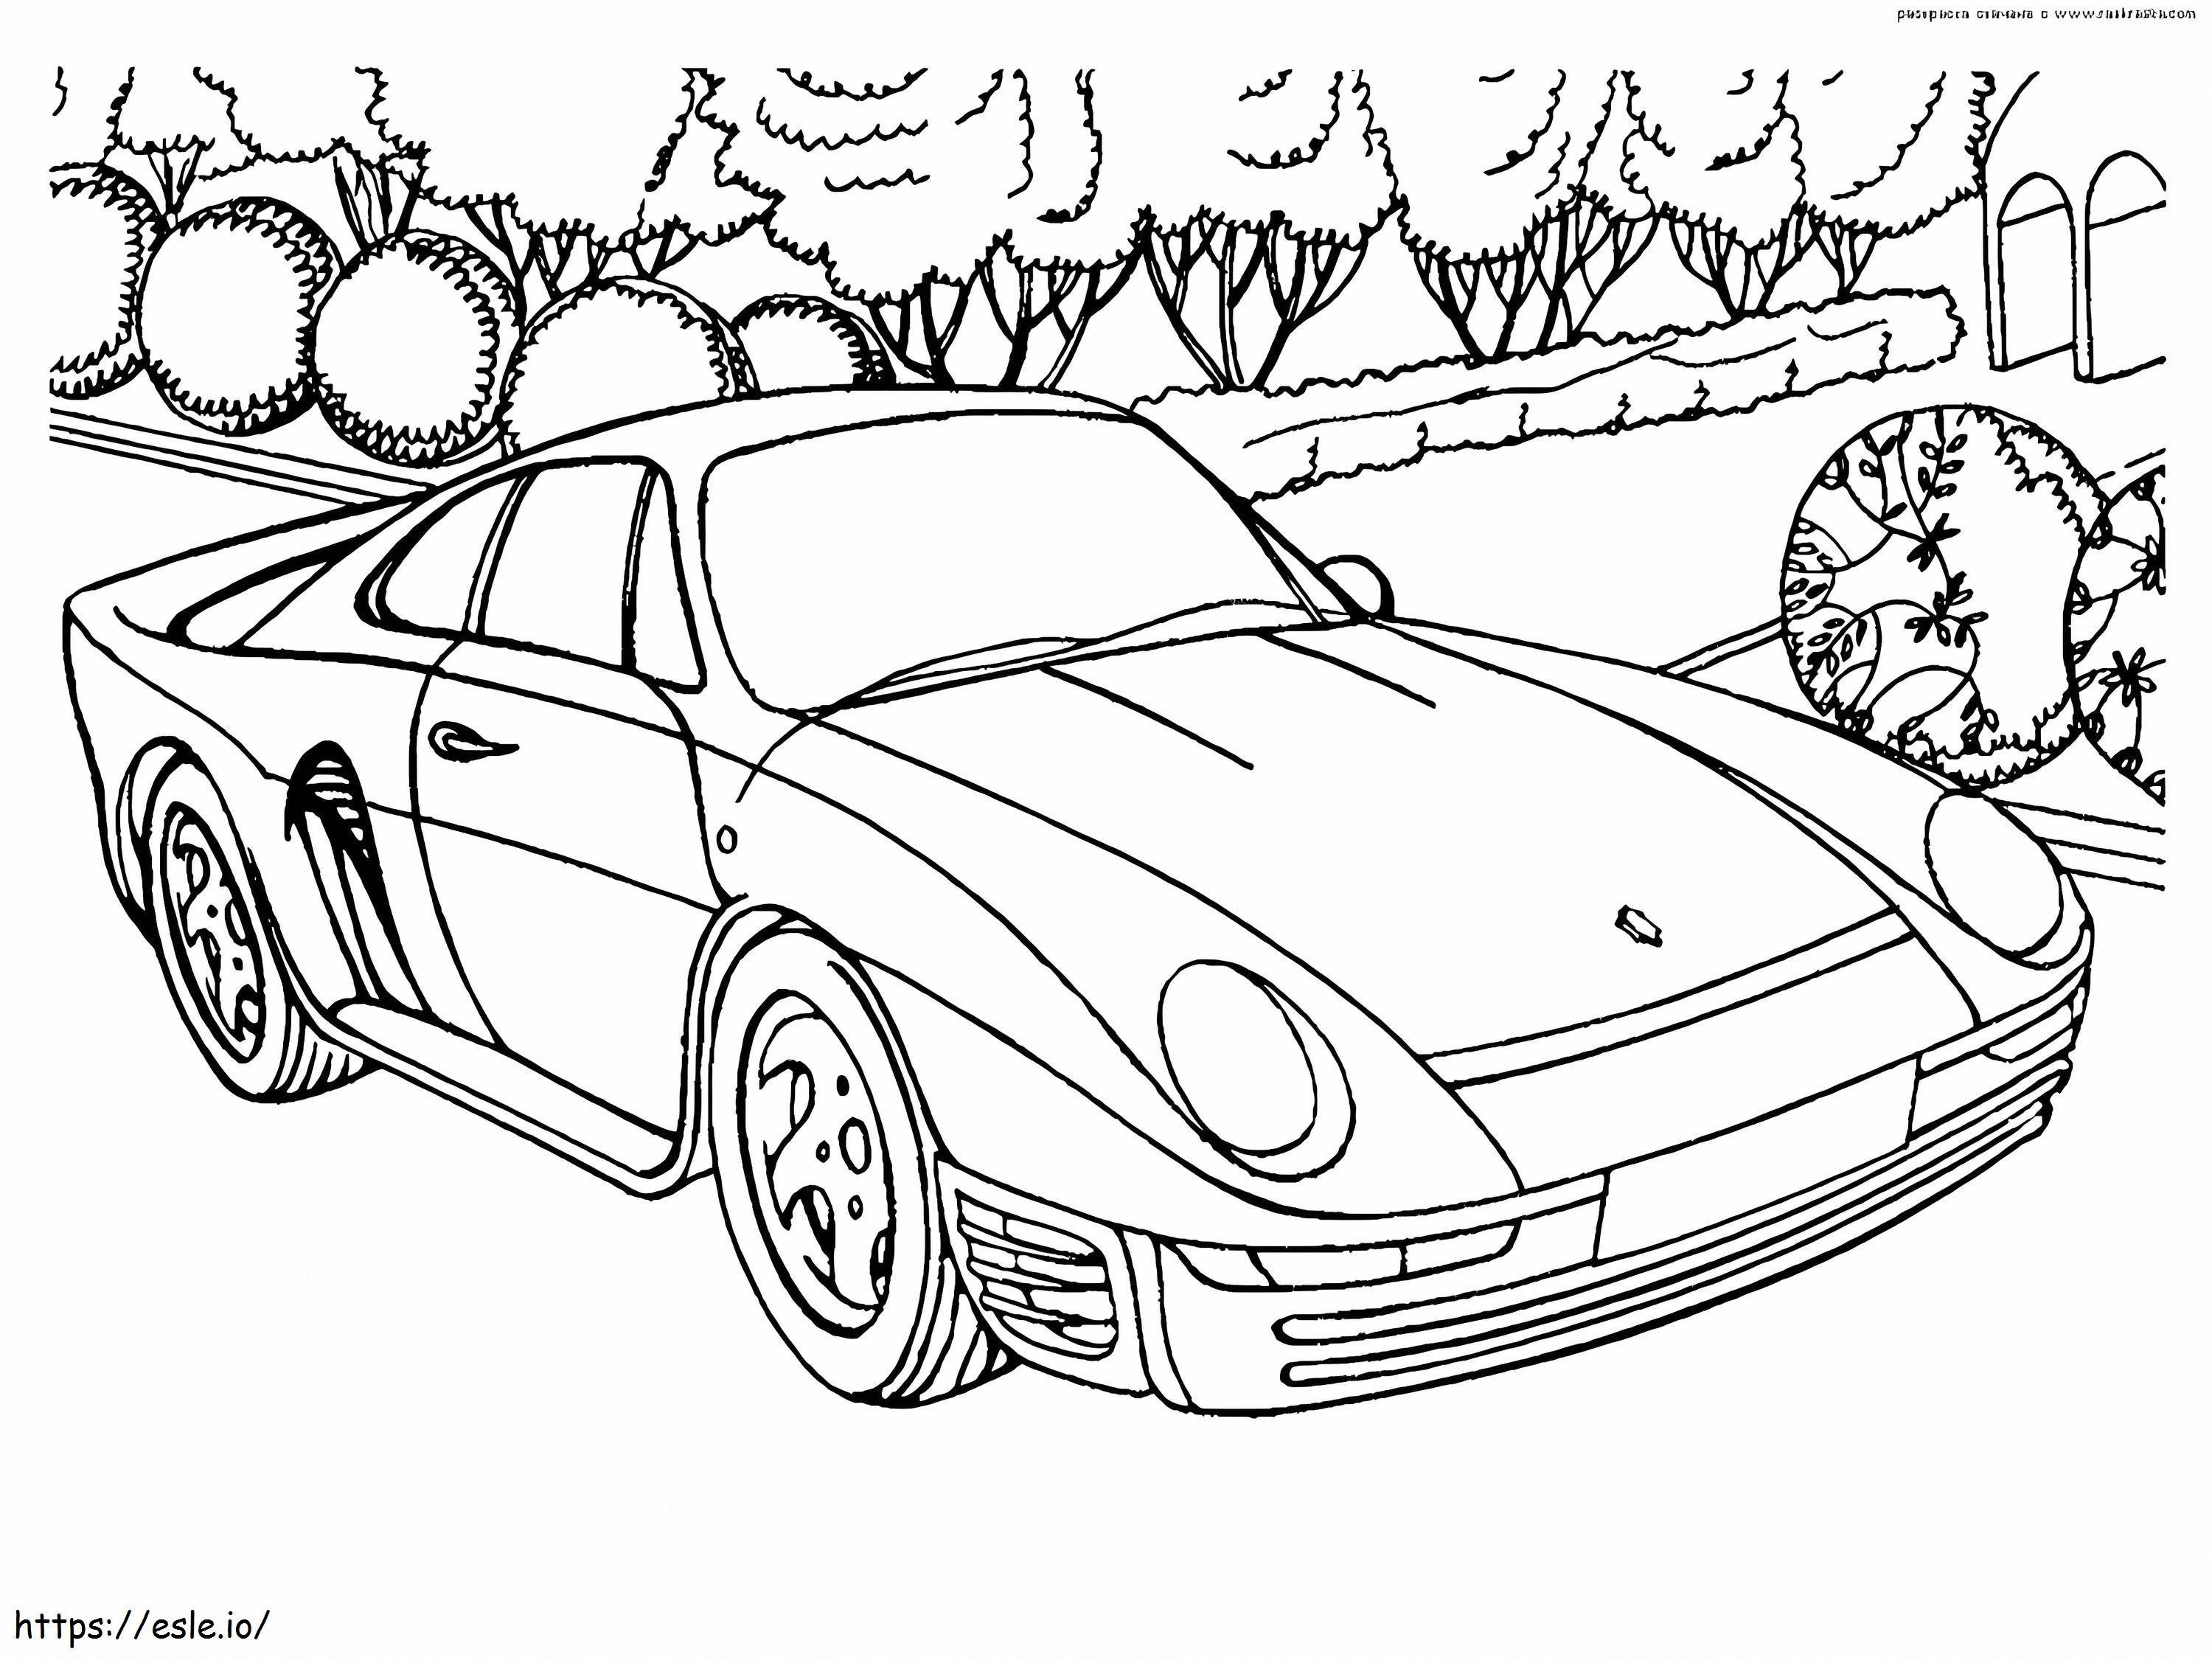 1585989462 Porsche 959 coloring page